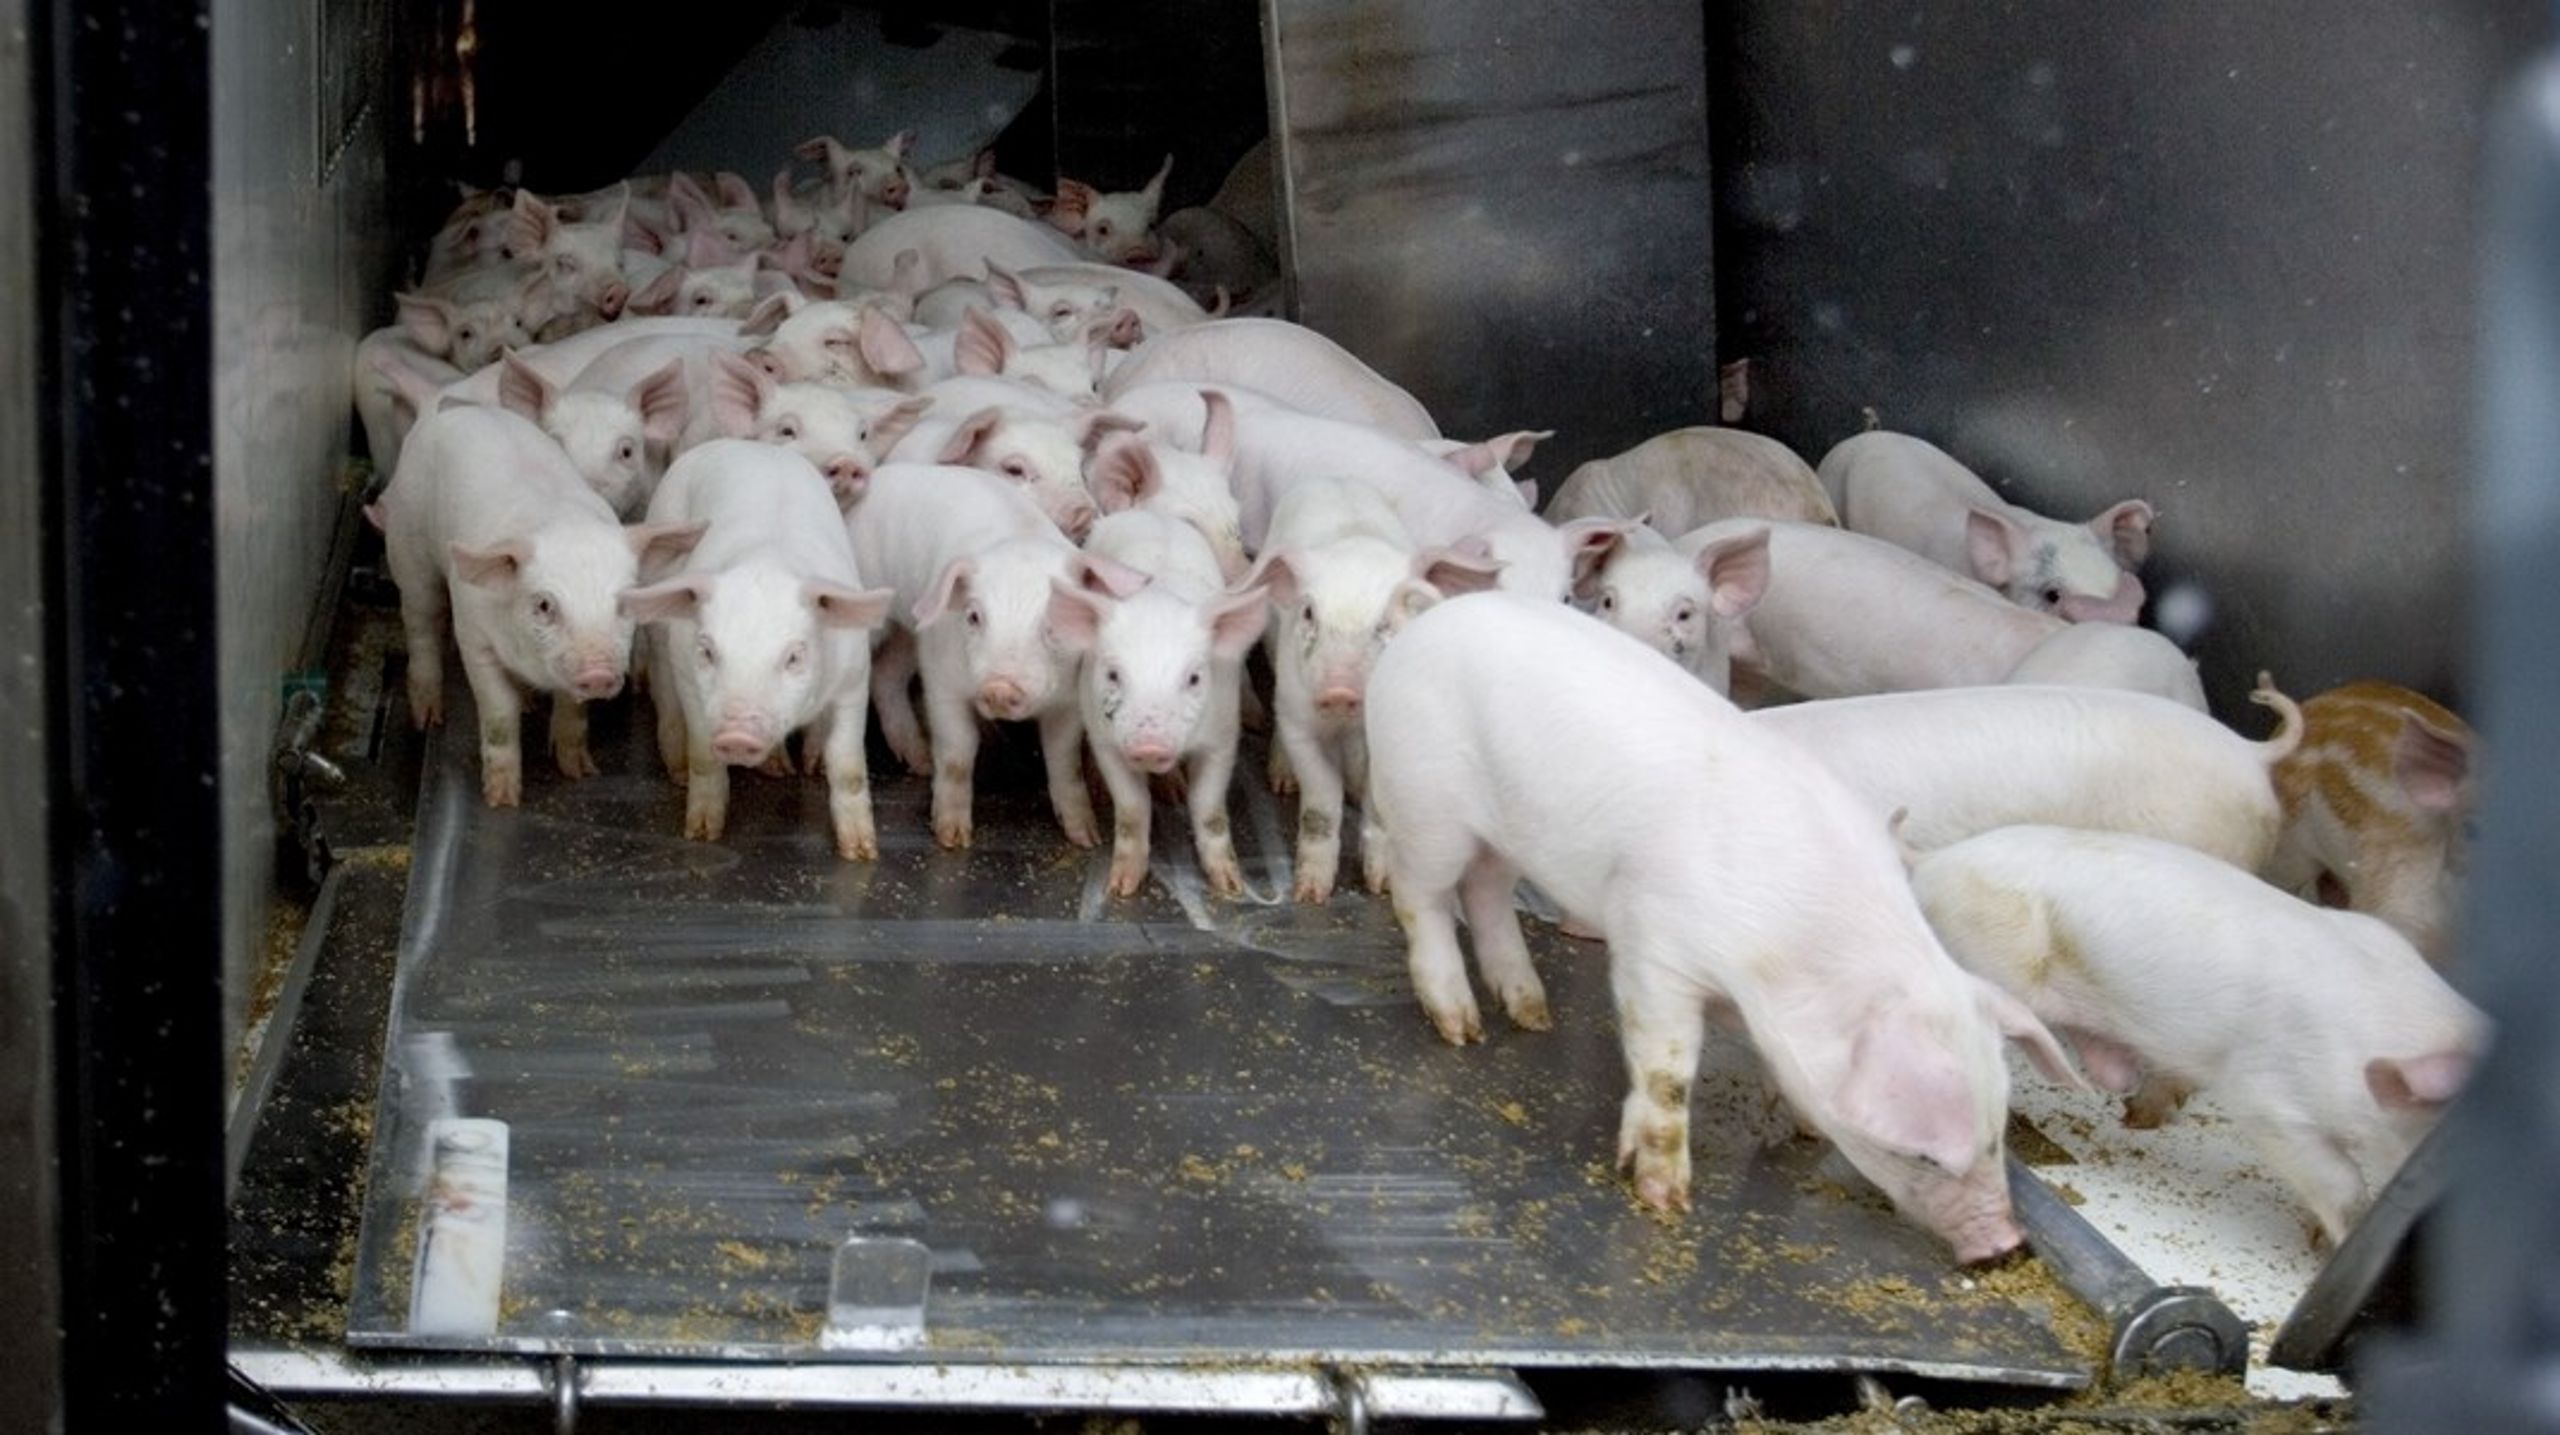 Med en overimplementering af EU-regler følger også sværere vilkår for de danske eksportører af svin, mener brancheorganisation.